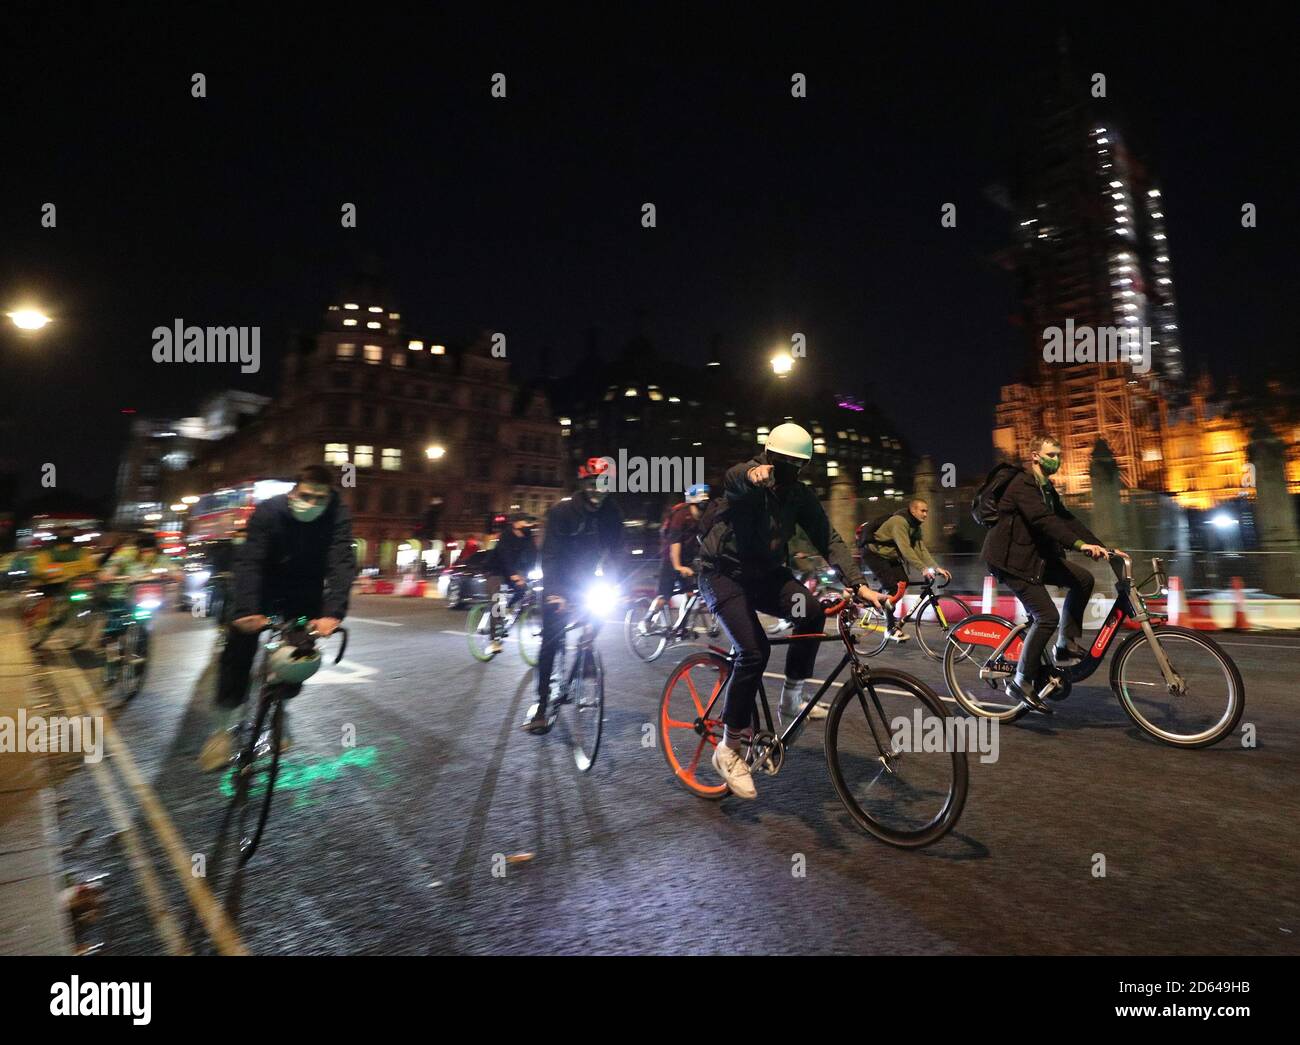 Radfahrer Zählen - Radfahrer ein Radfahren Zähler im Zentrum von Cambridge  Stockfotografie - Alamy